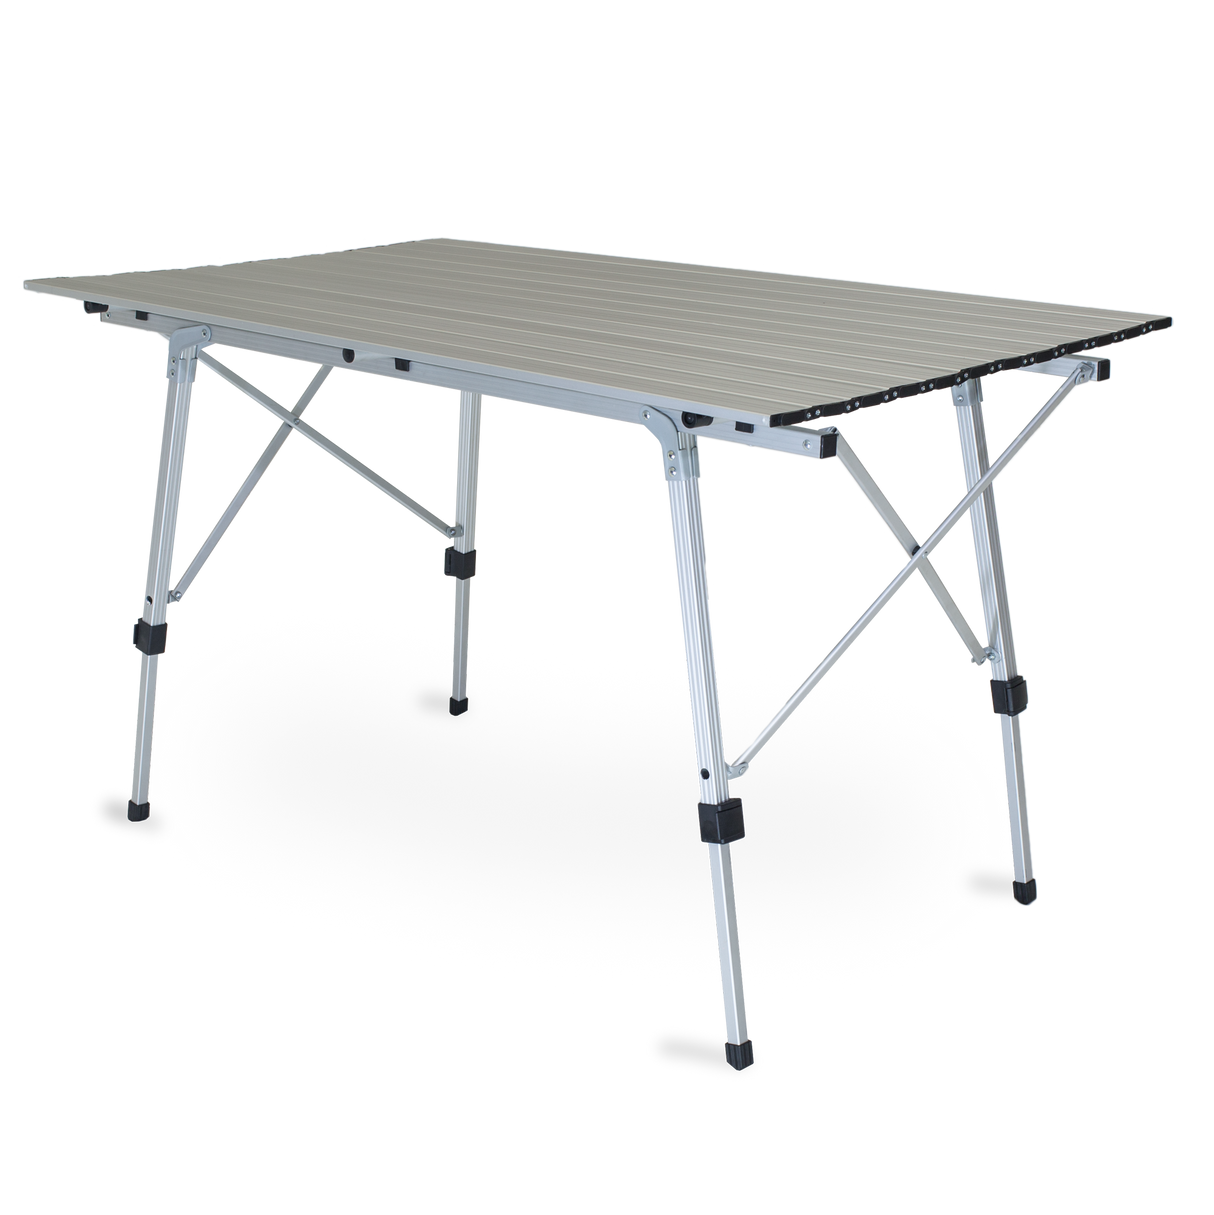 Zempire Slatpac Large Table